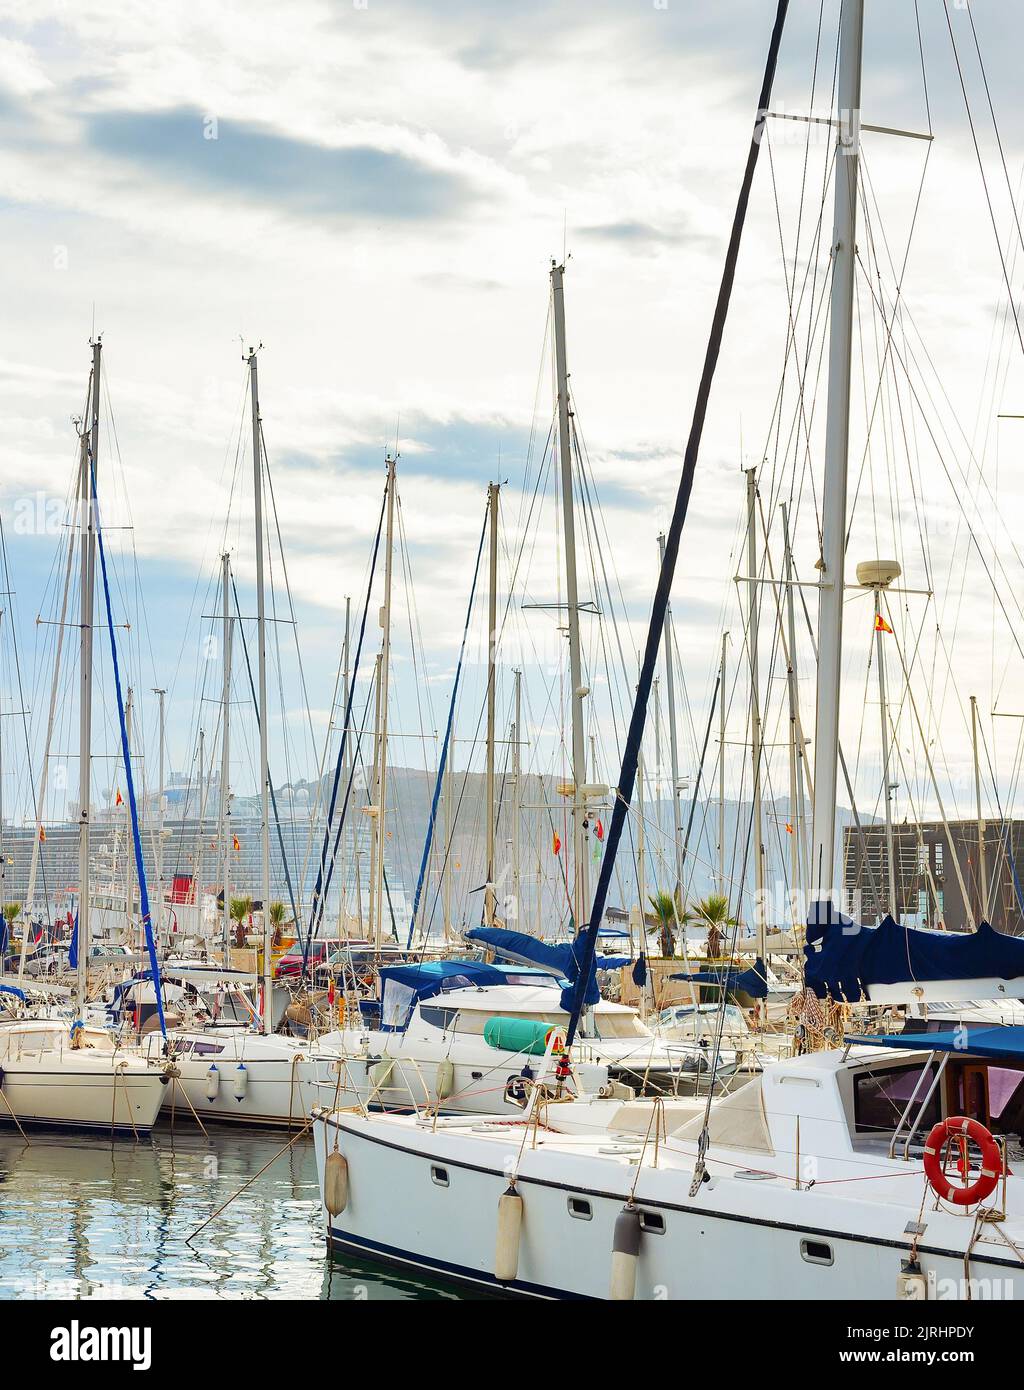 Marina avec yachts de luxe amarrés, bateau de croisière en arrière-plan, ciel couvert. Sanremo, Italie Banque D'Images